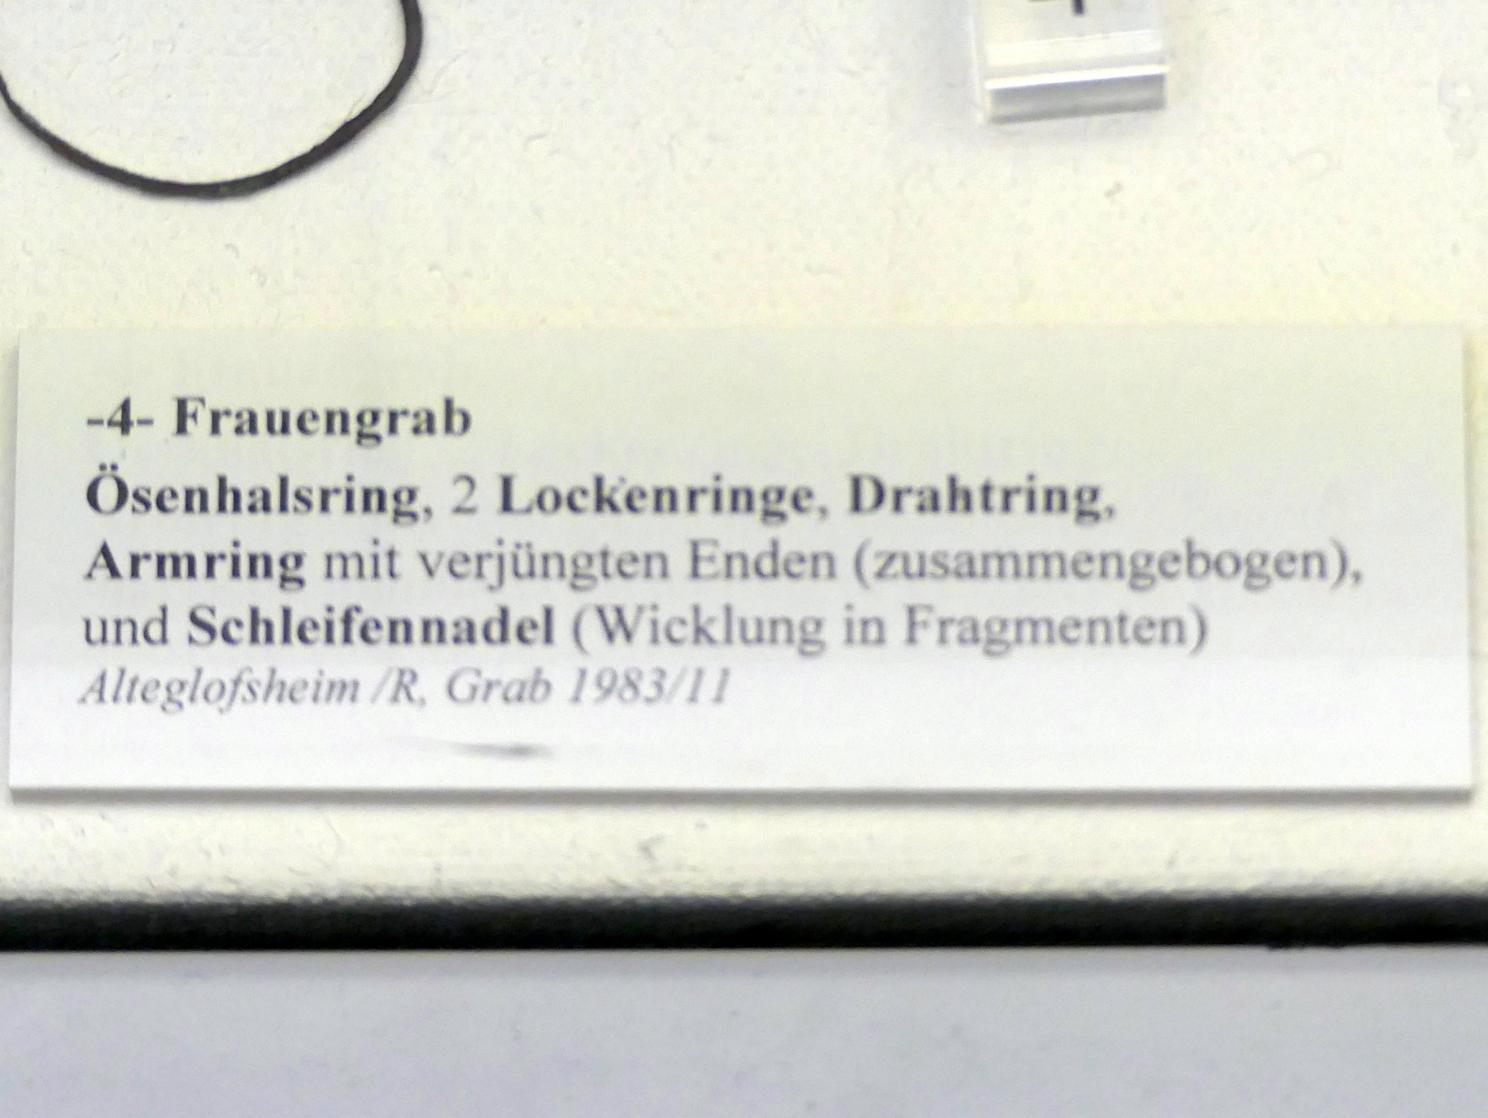 2 Lockenringe, Frühe Bronzezeit, 3365 - 1200 v. Chr., Bild 2/2